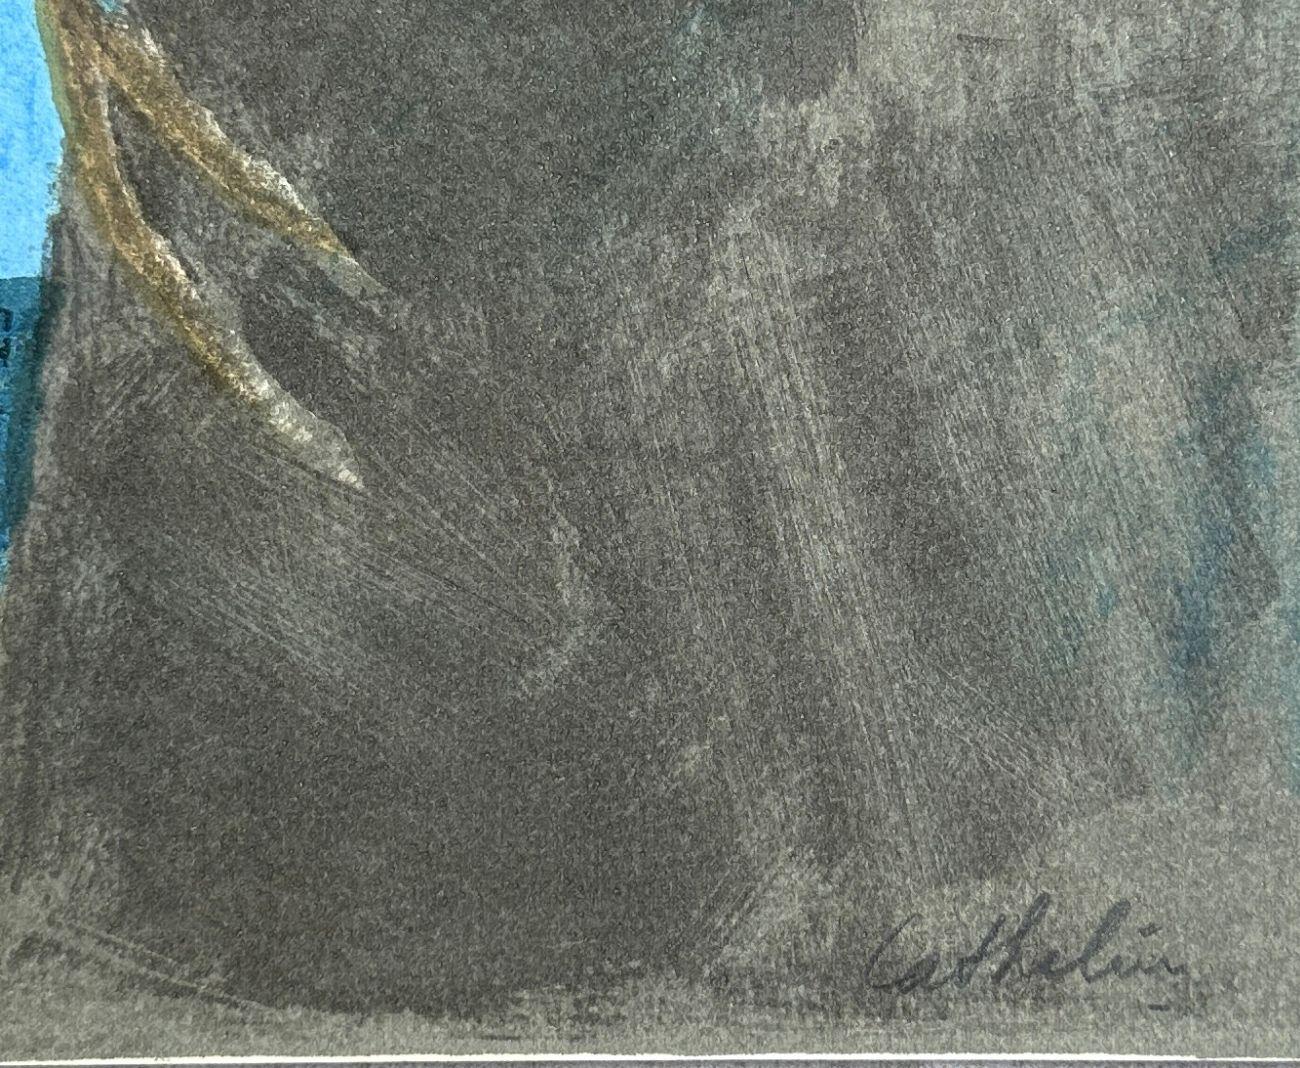 Bernard CATHELIN
Laurier dans un ravin

Lithographie originale, 1988
Signé à la main au crayon
Inscrit EA (épreuve d'artiste) en marge de l'édition de 100 exemplaires
Sur papier Arches, format 40 x 31 (c. 15 8/10 x 12 1/5 inches)
Très bon